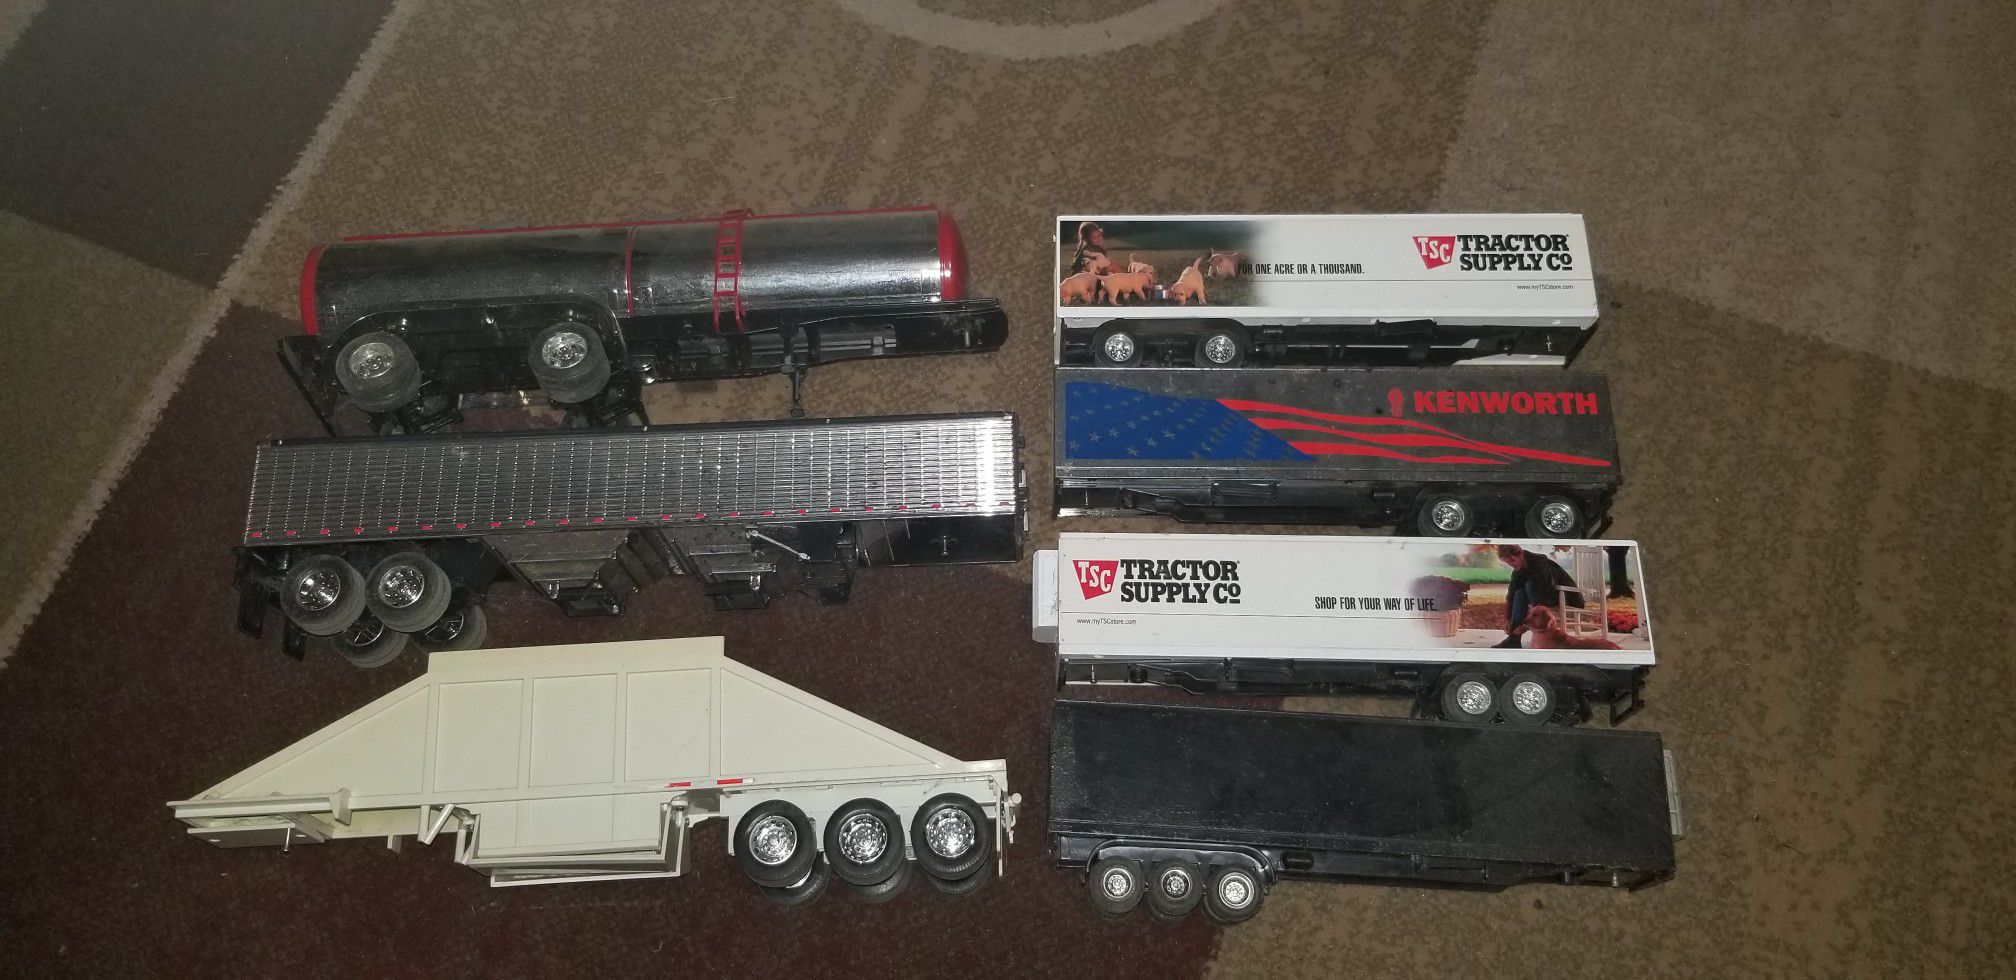 Semi truck toys